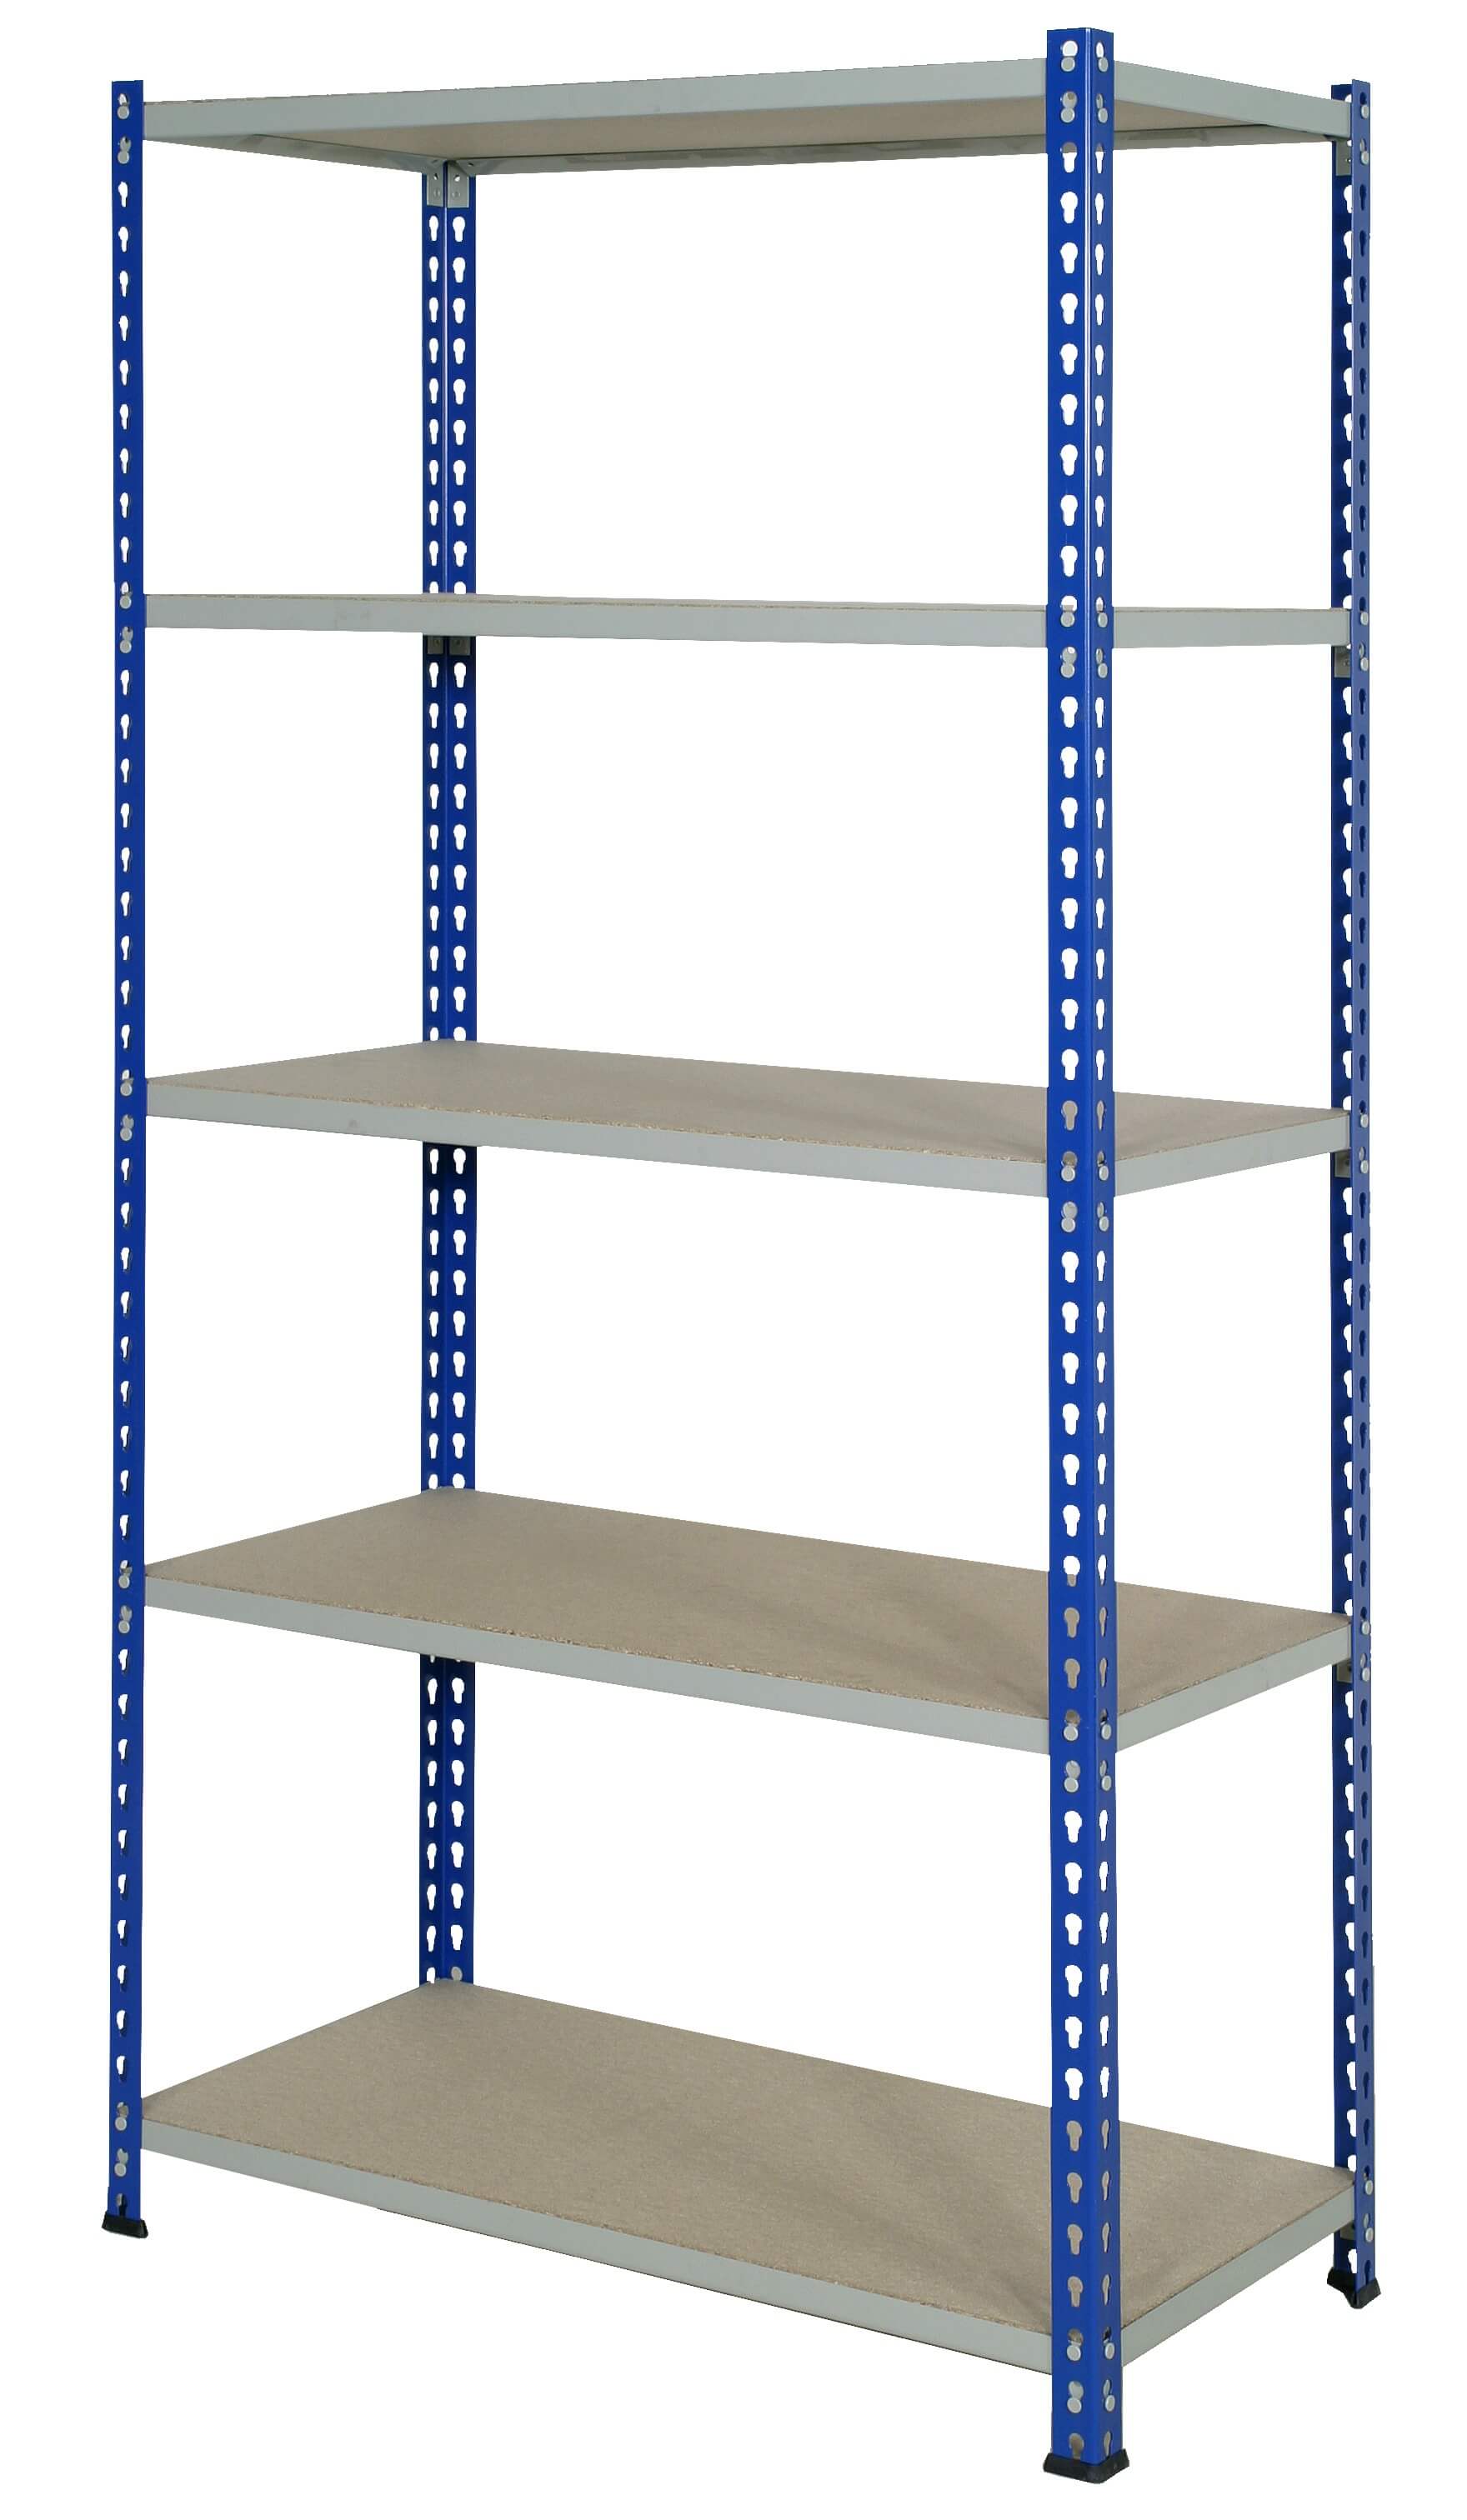 J Rivet Shelving, Blue/Grey 5 Shelves - 1830x915x305mm - 150kg UDL.